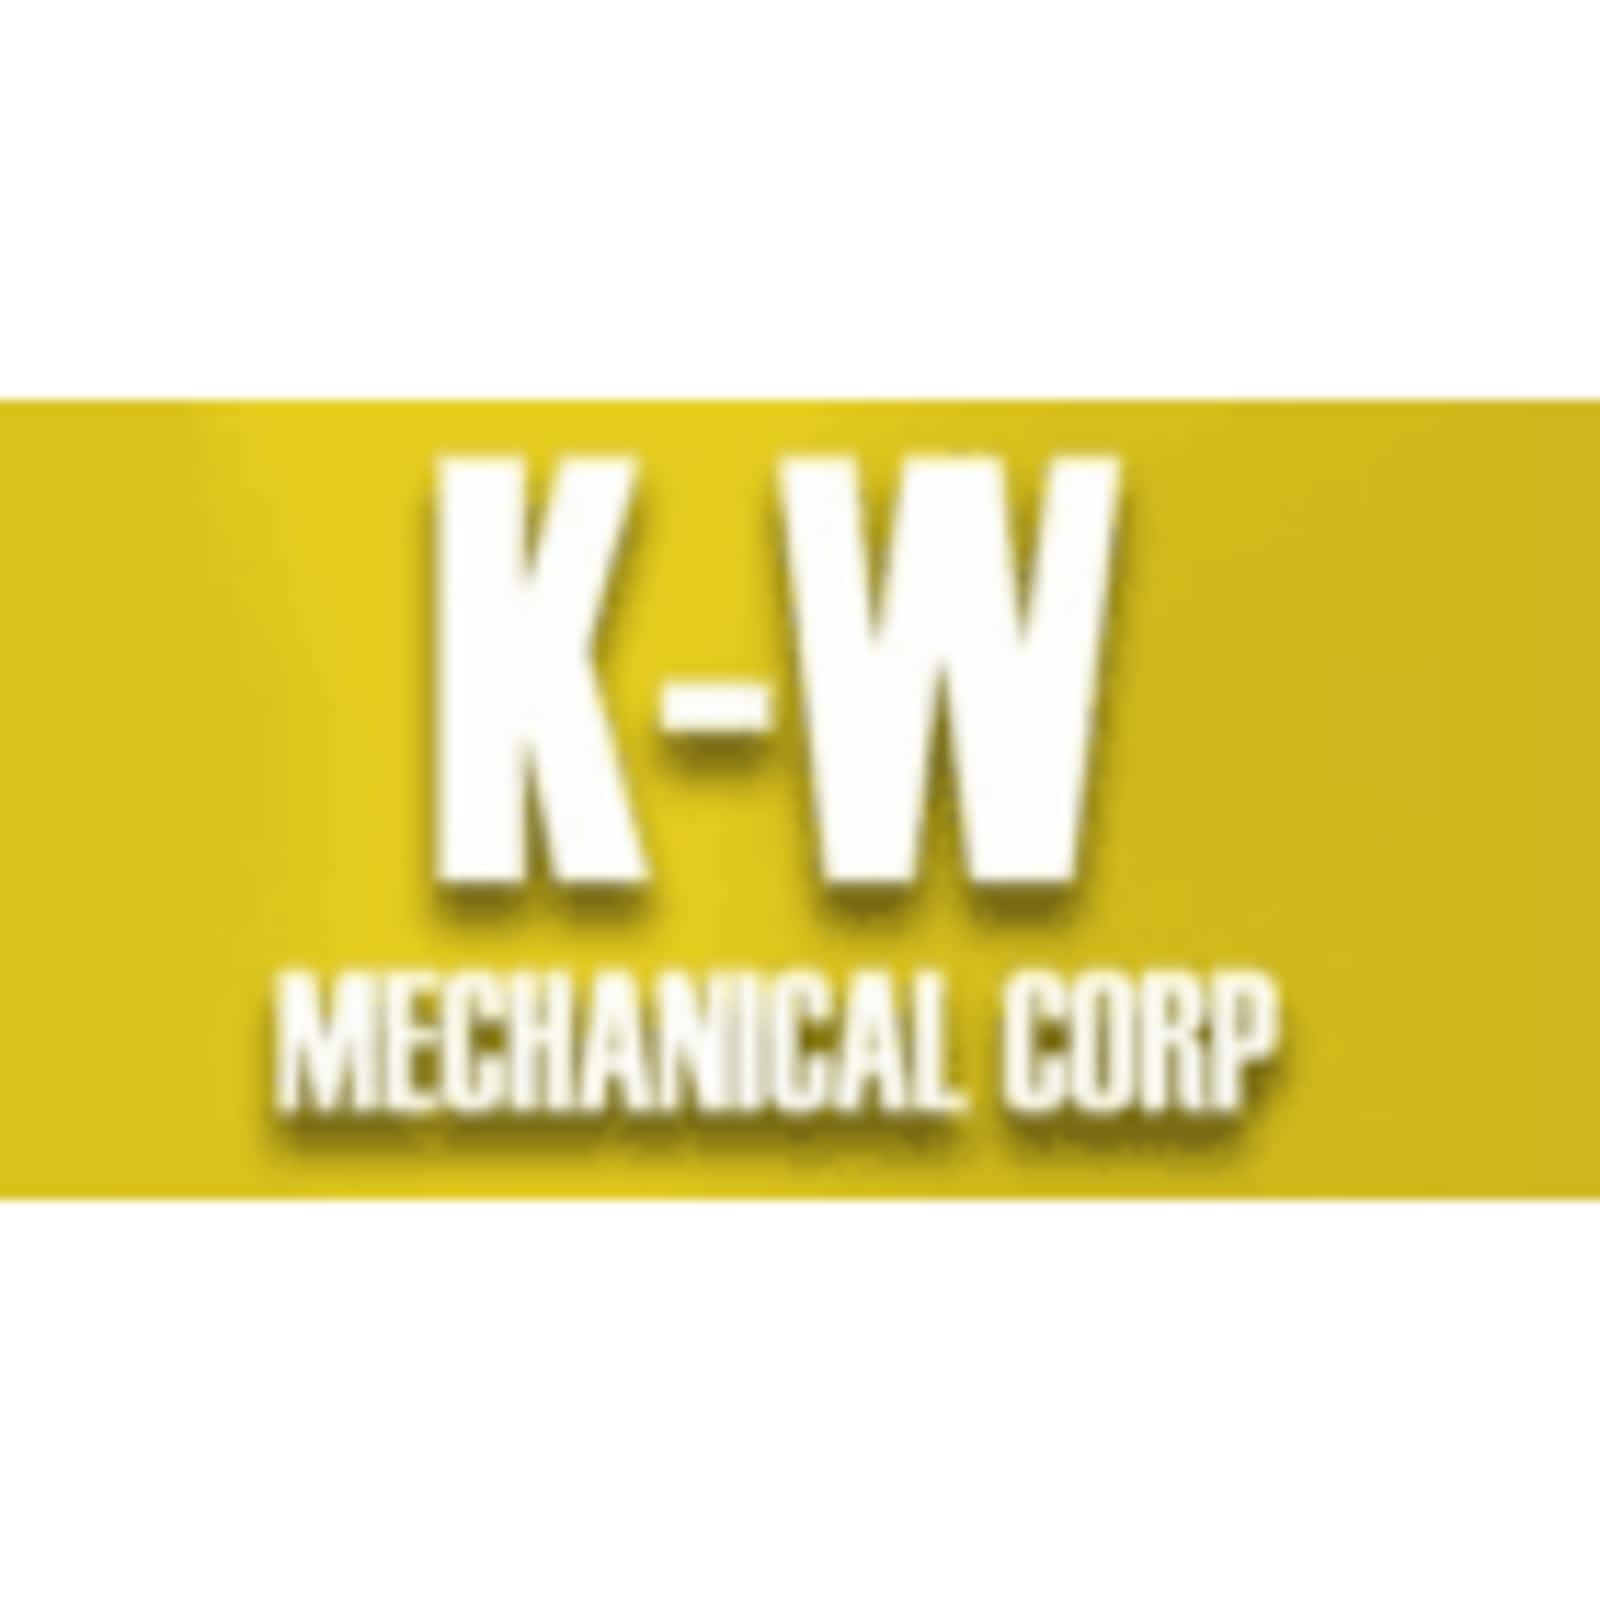 K-W Mechanical Corp. 4669 Lobsinger Line, Millbank Ontario N0K 1L0